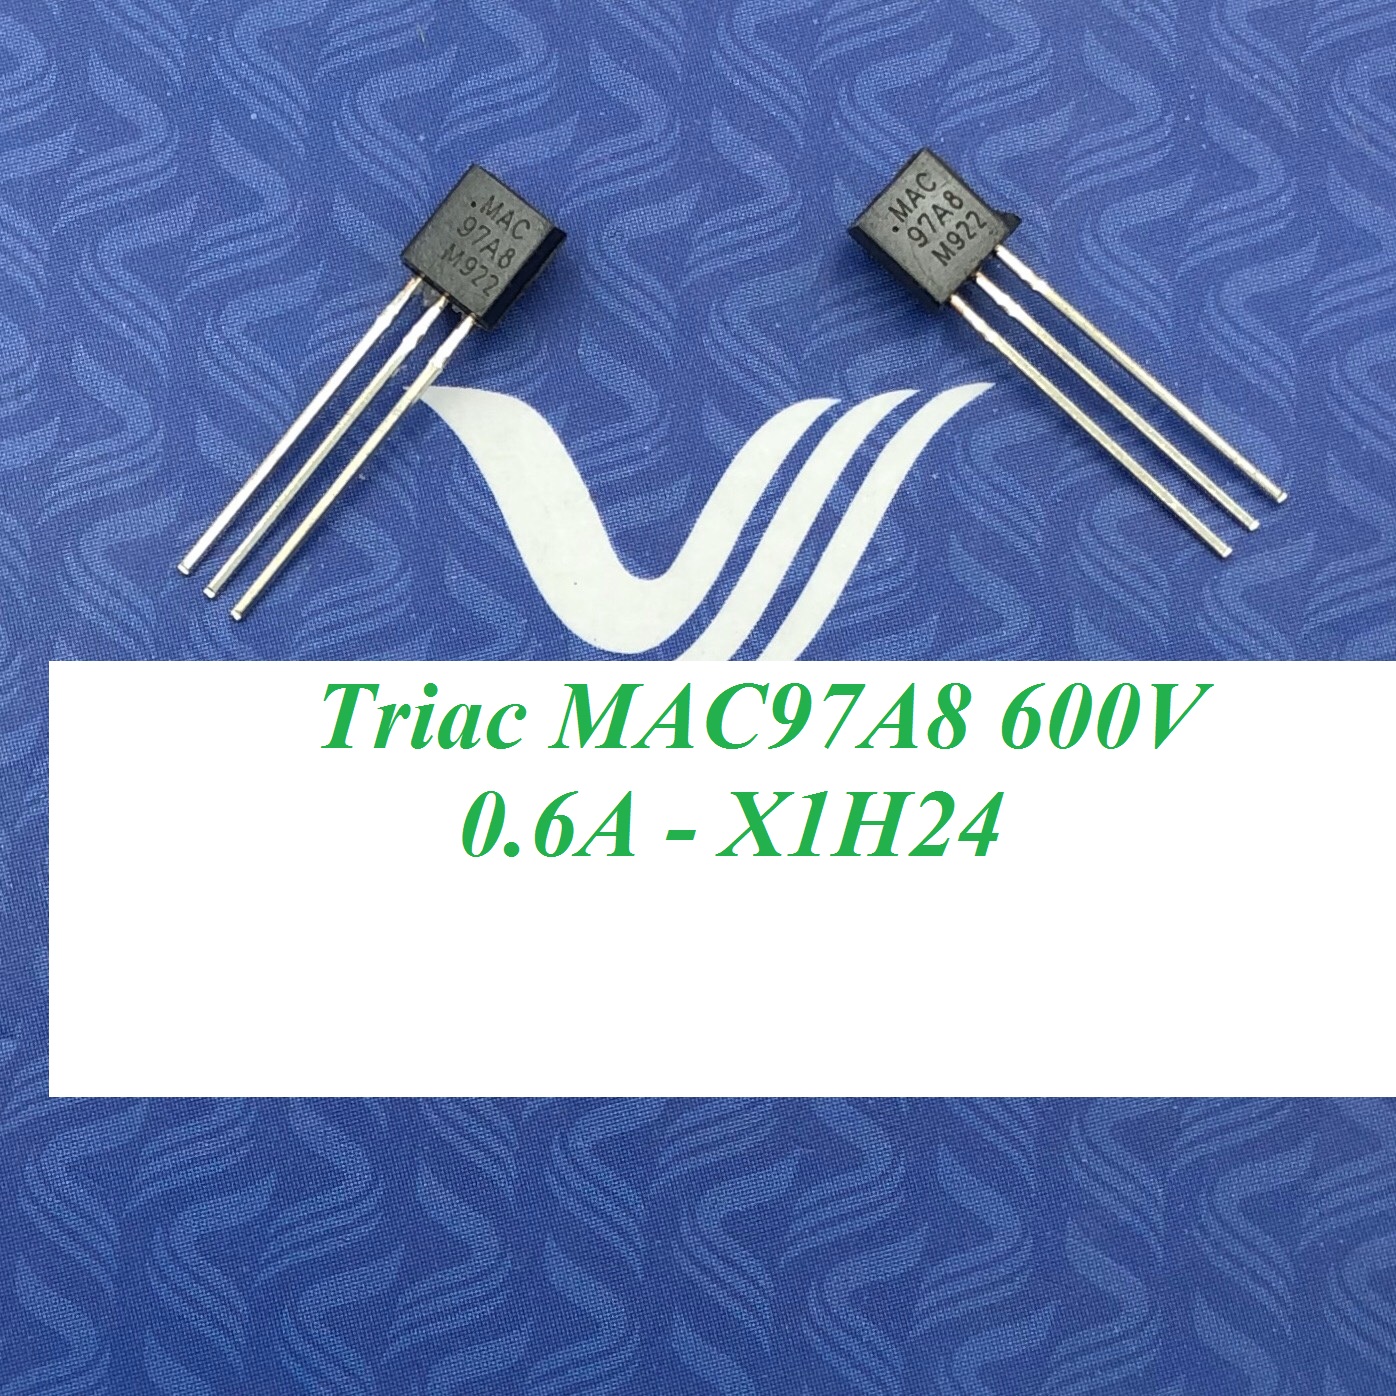 Triac MAC97A8 600V 0.6A - X1H24